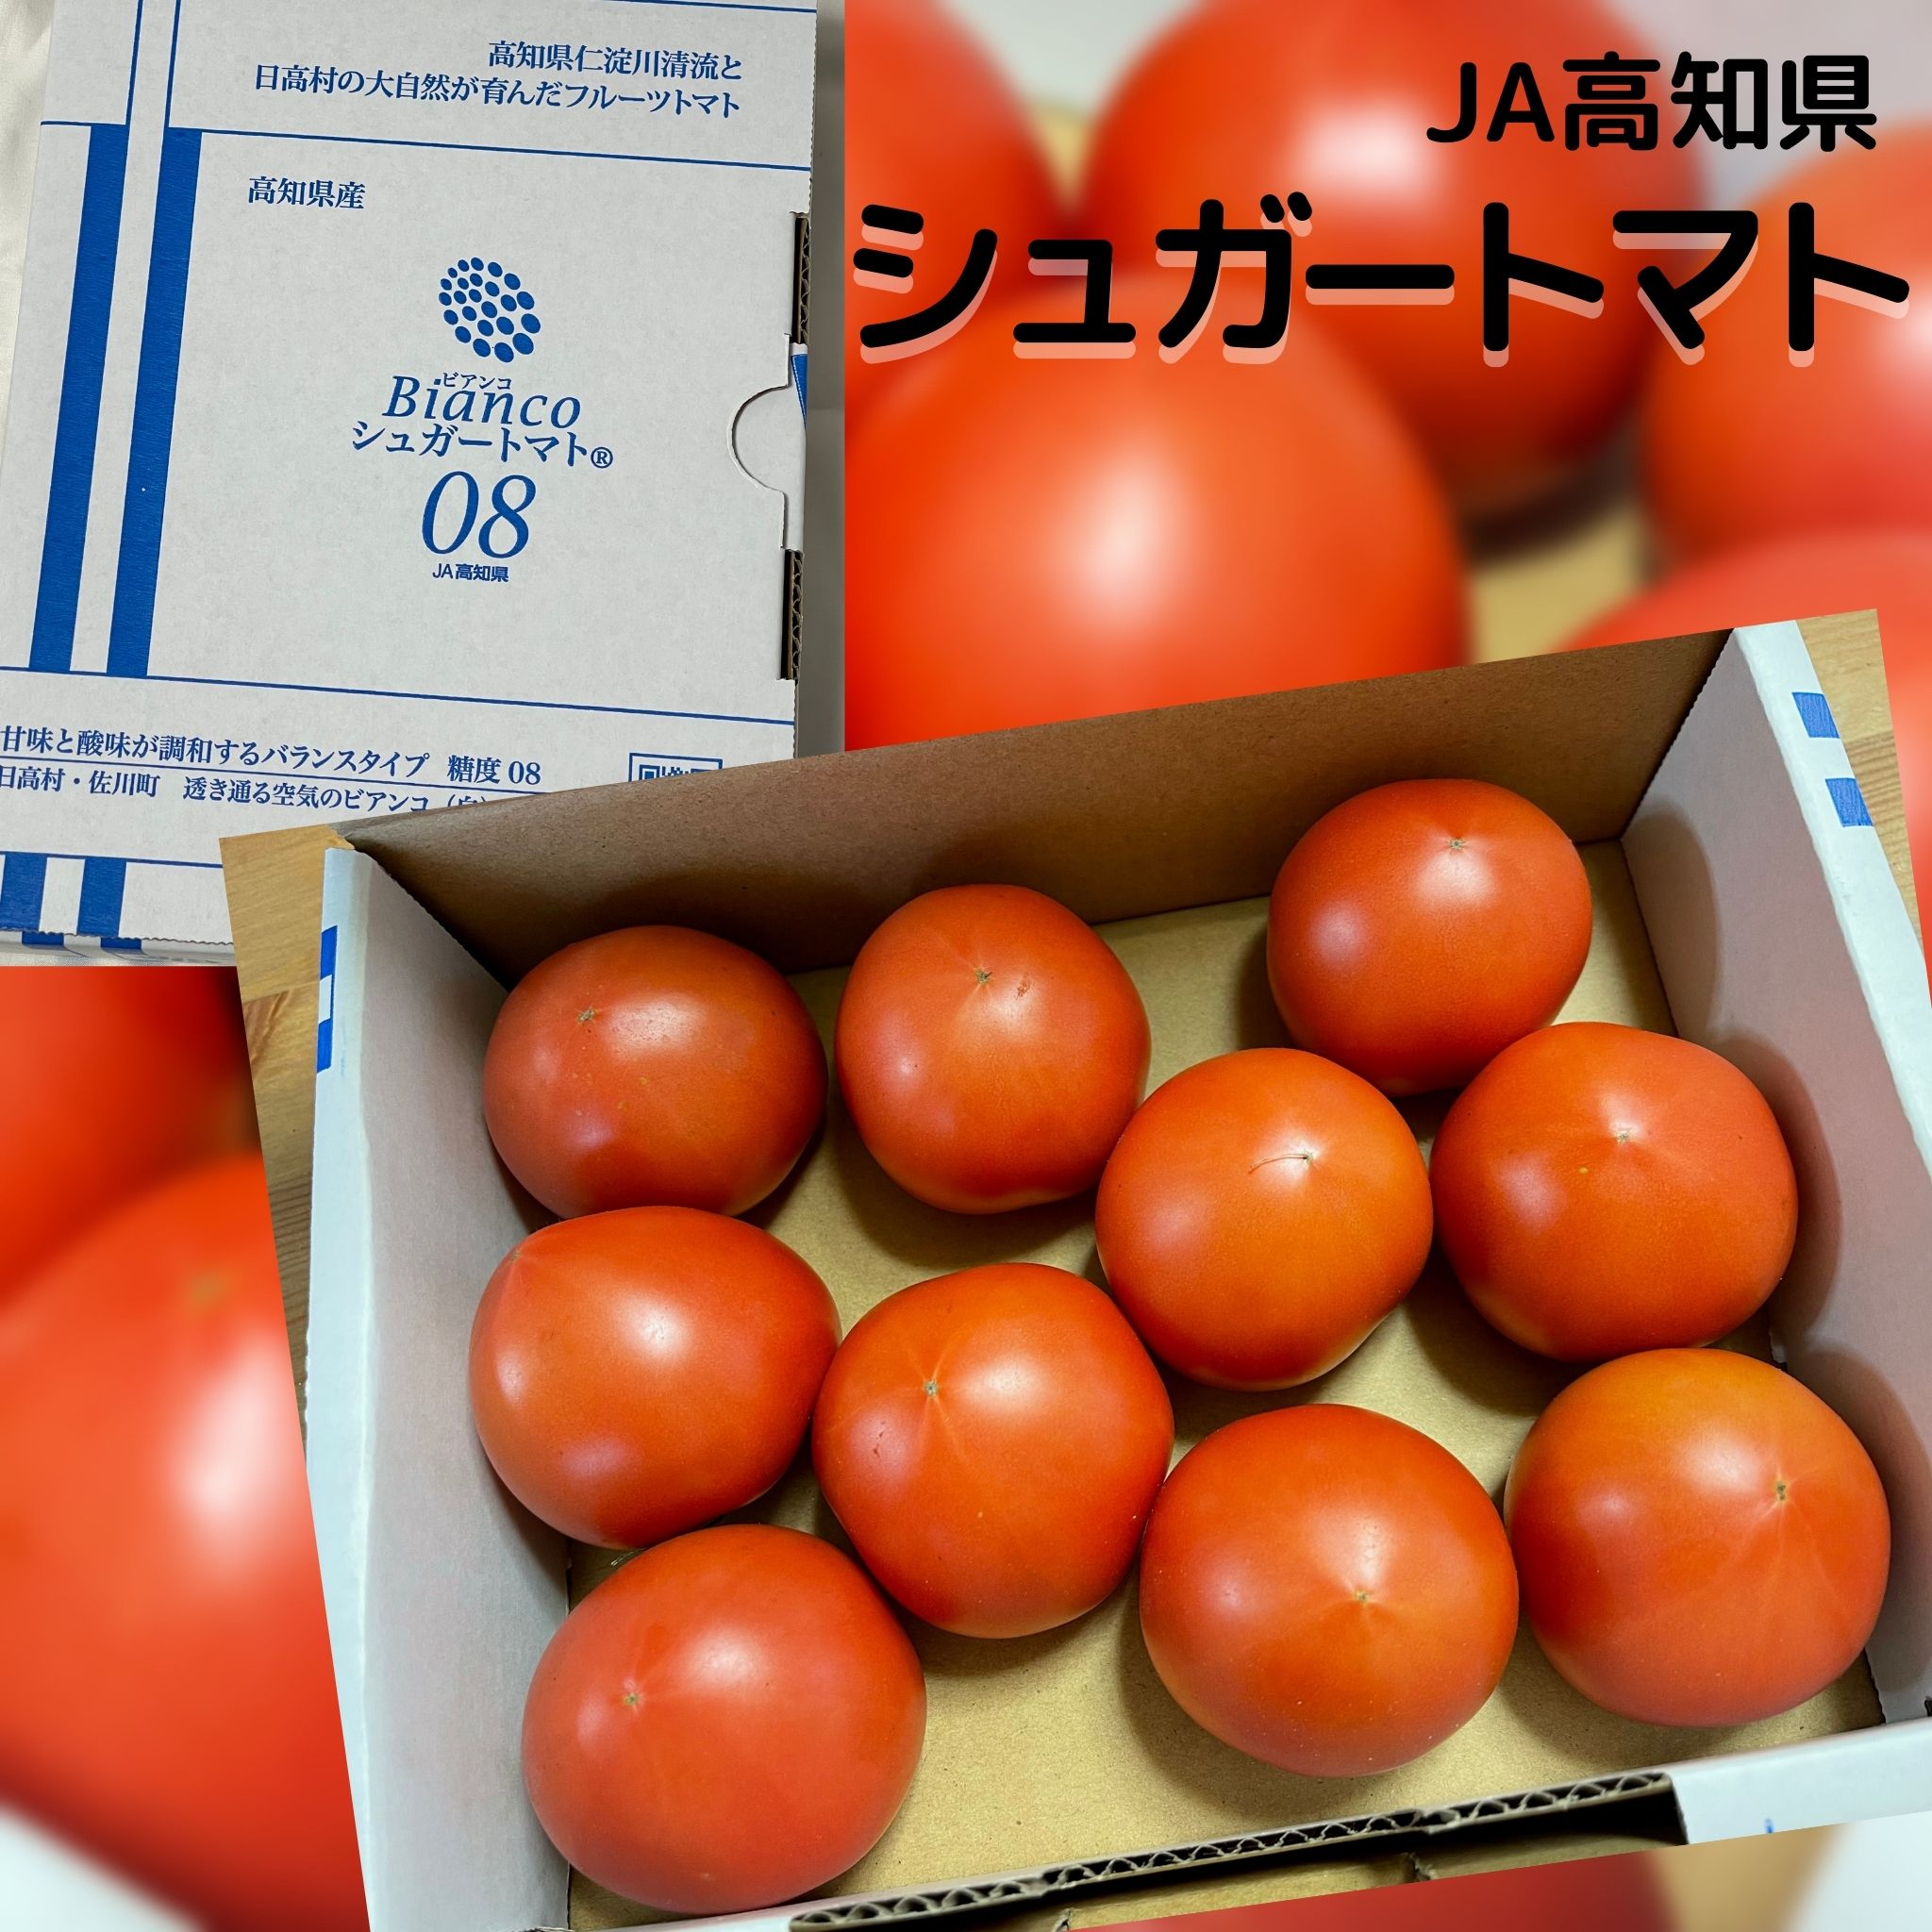 今が旬 高知県フルーツトマトの発祥 公式サイト 送料無料 超特価sale開催 市場直送 JA高知県 シュガートマト フルーツトマト ビアンコ とまと きのこ 野菜